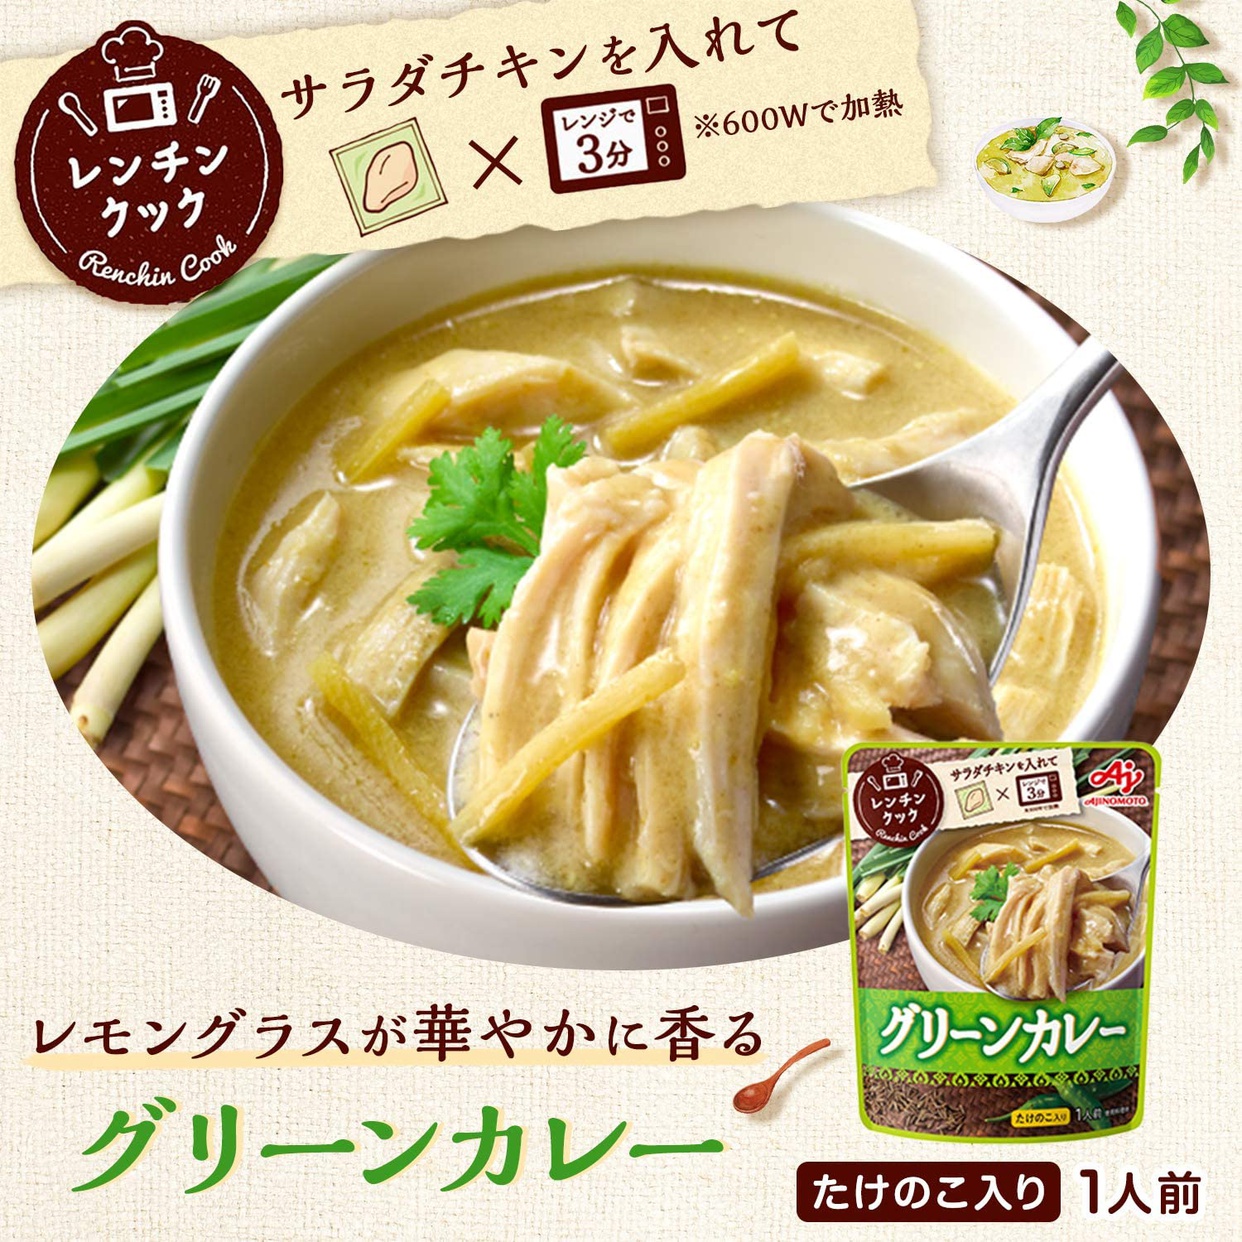 味の素(AJINOMOTO) レンチンクック グリーンカレーの商品画像サムネ2 